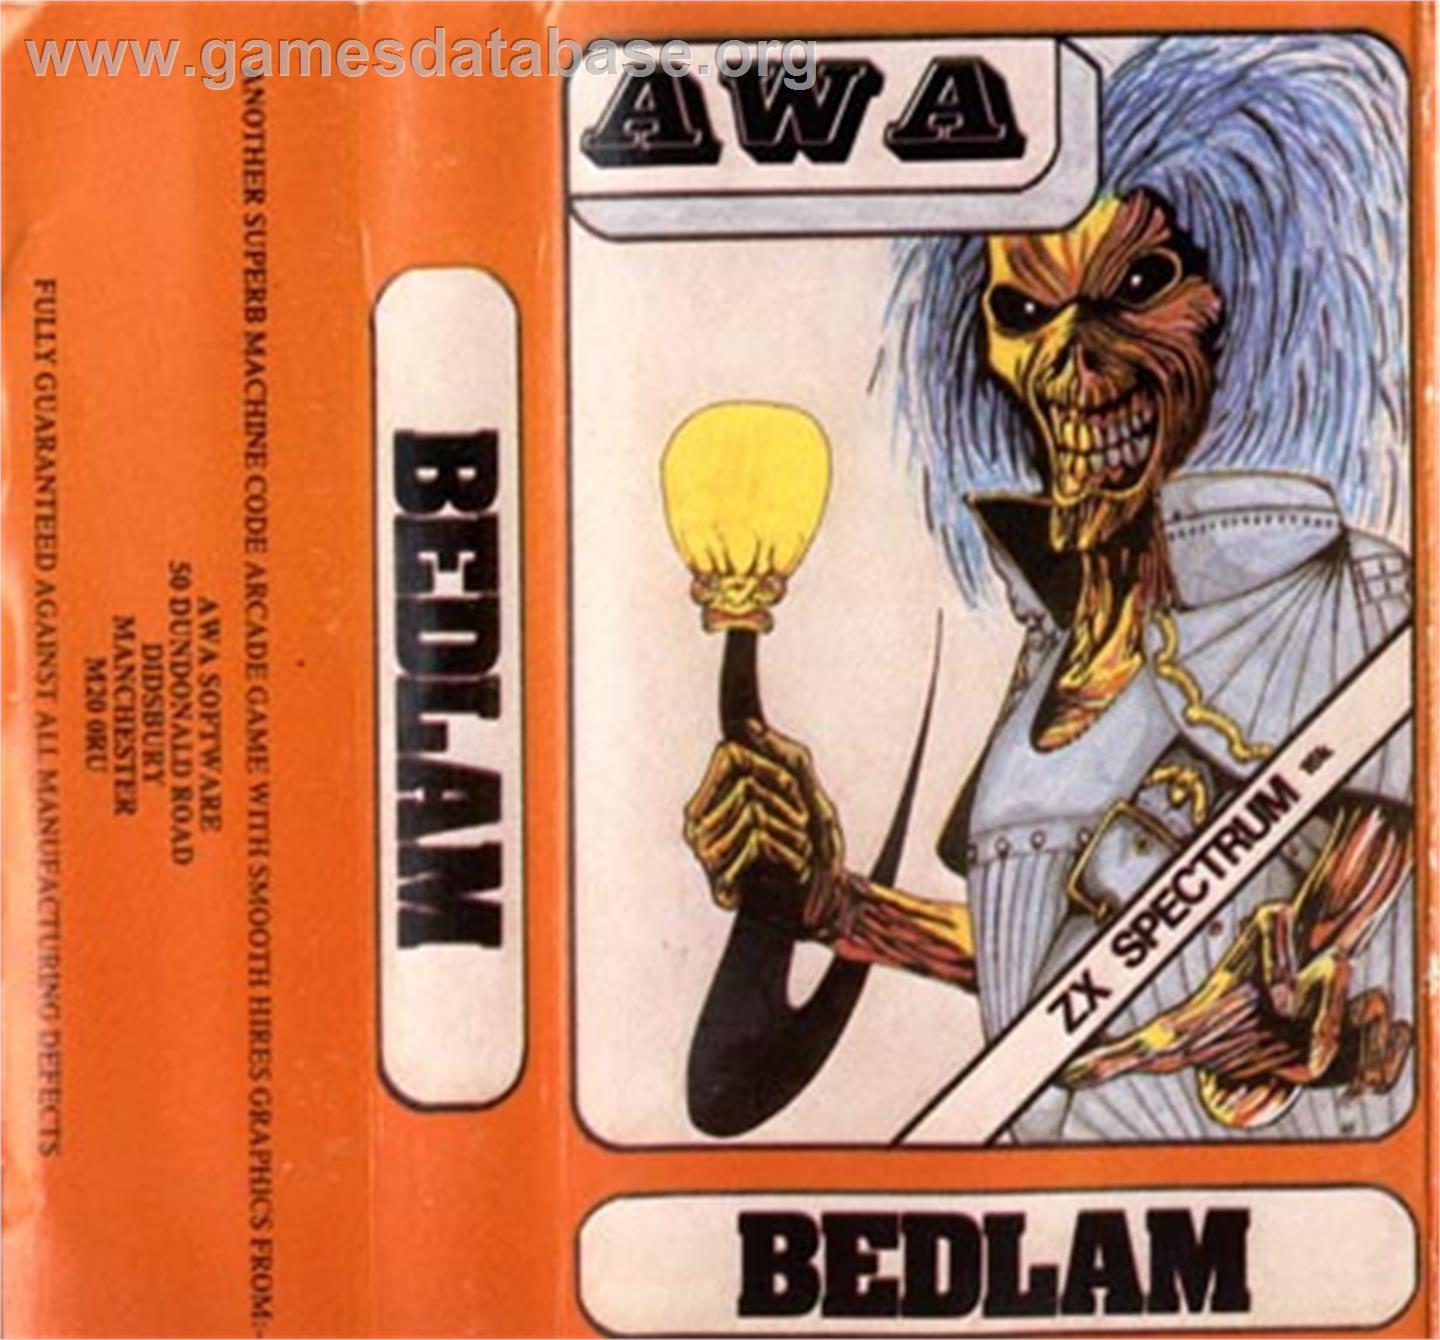 Bedlam - Sinclair ZX Spectrum - Artwork - Box